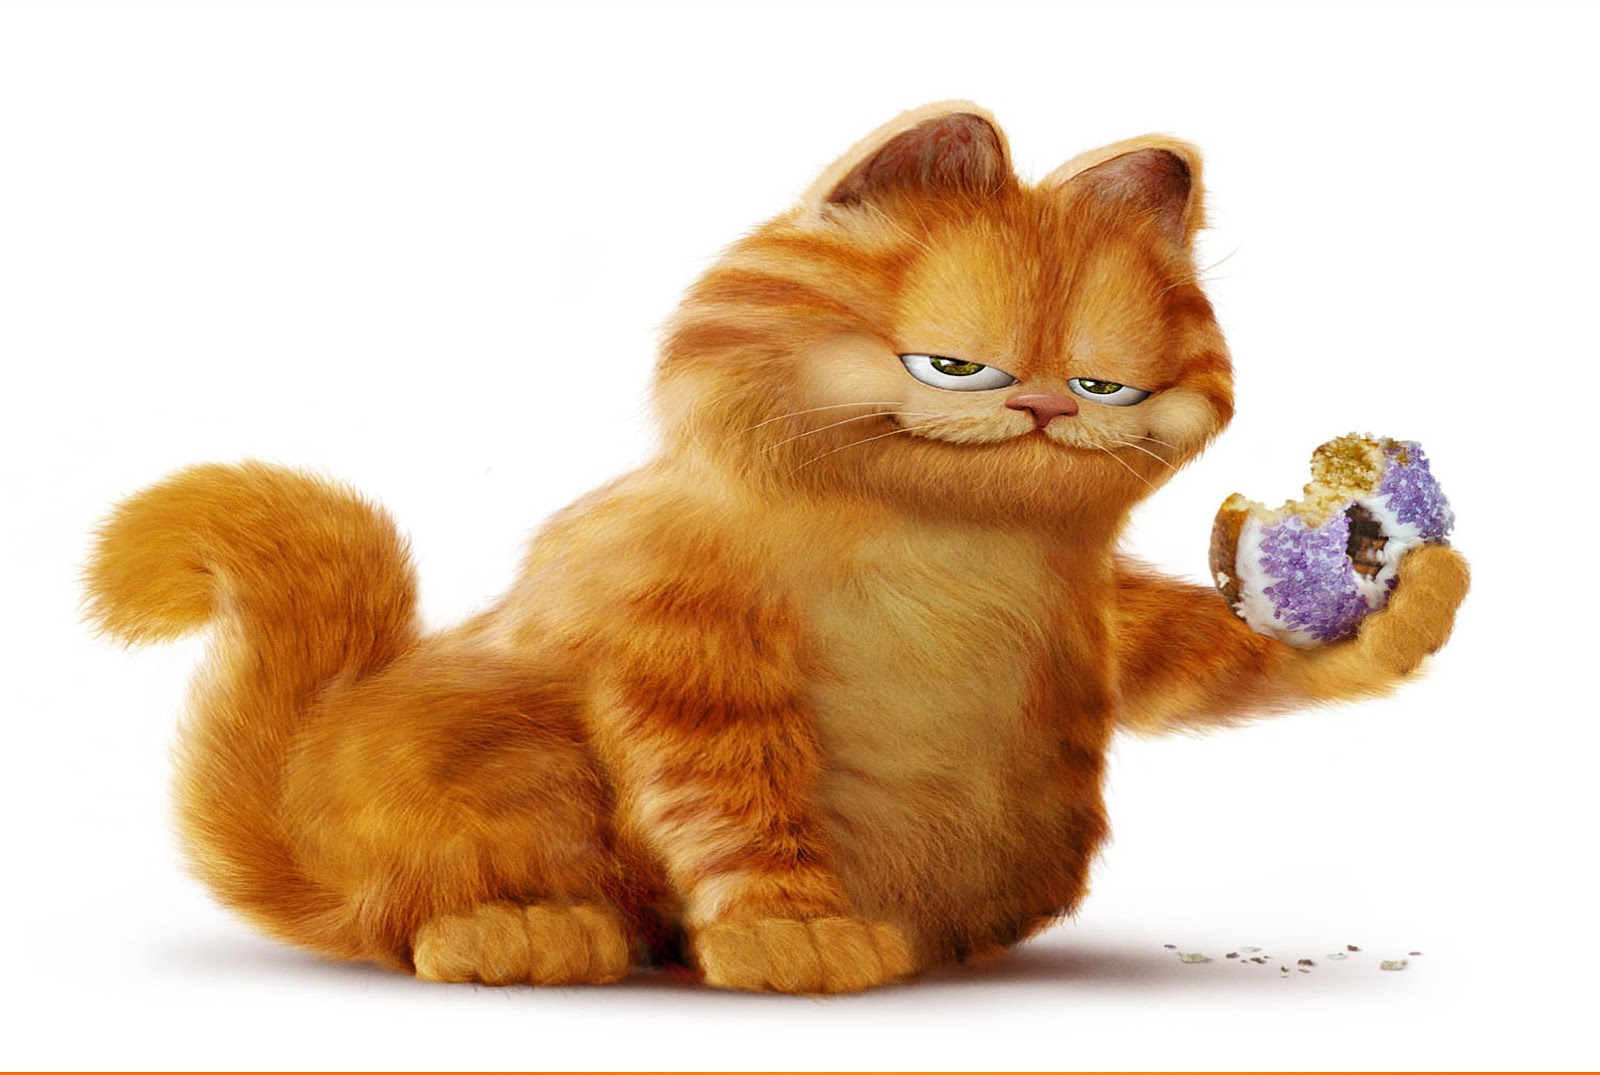 Wallpaper Lucu Gambar Kucing  Garfield  Terbaru 2021 Kata 